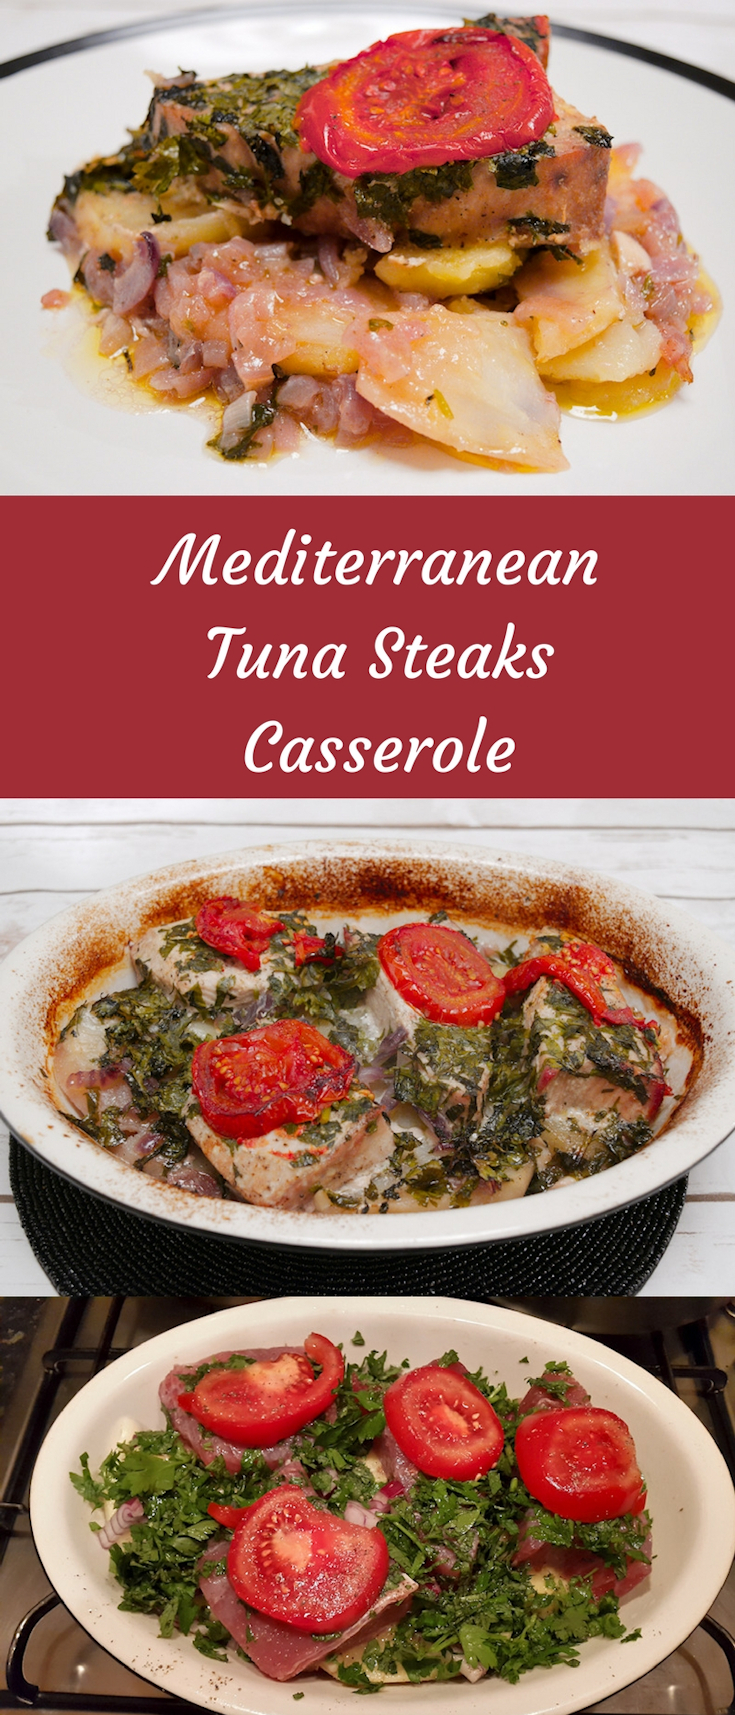 Mediterranean Tuna Steaks Casserole